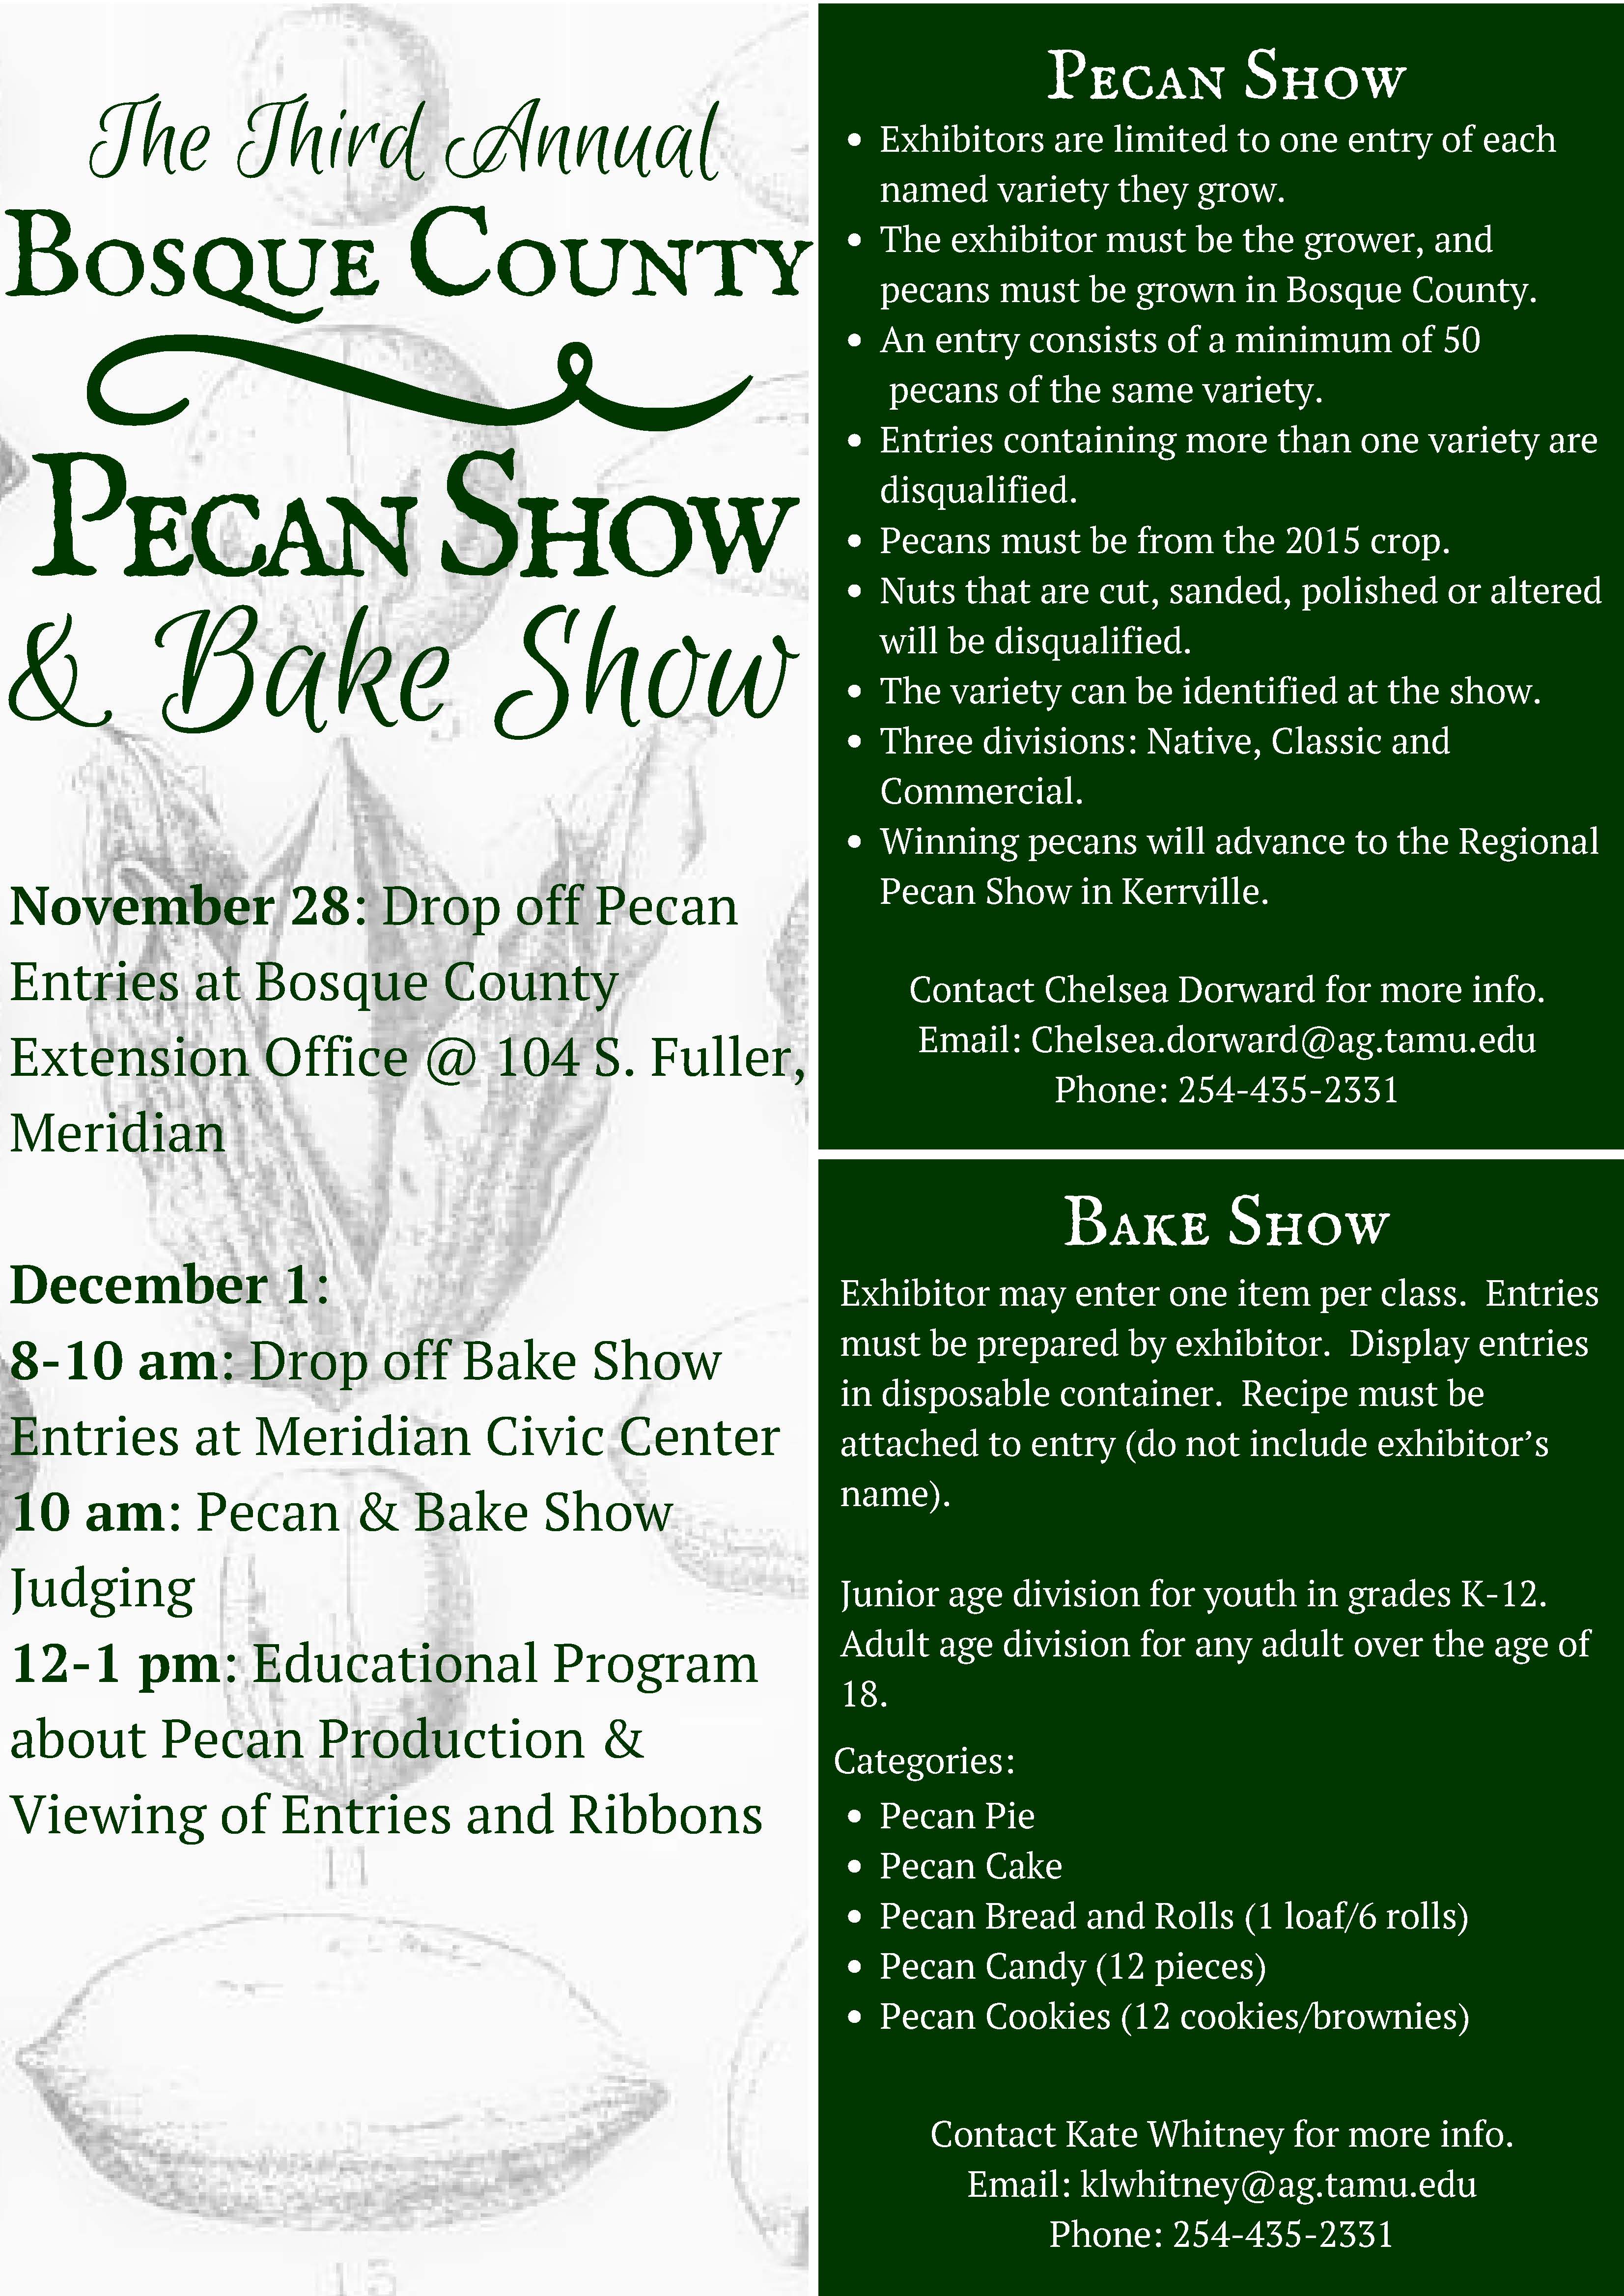 bosque-county-3rd-annual-pecan-show-bake-show